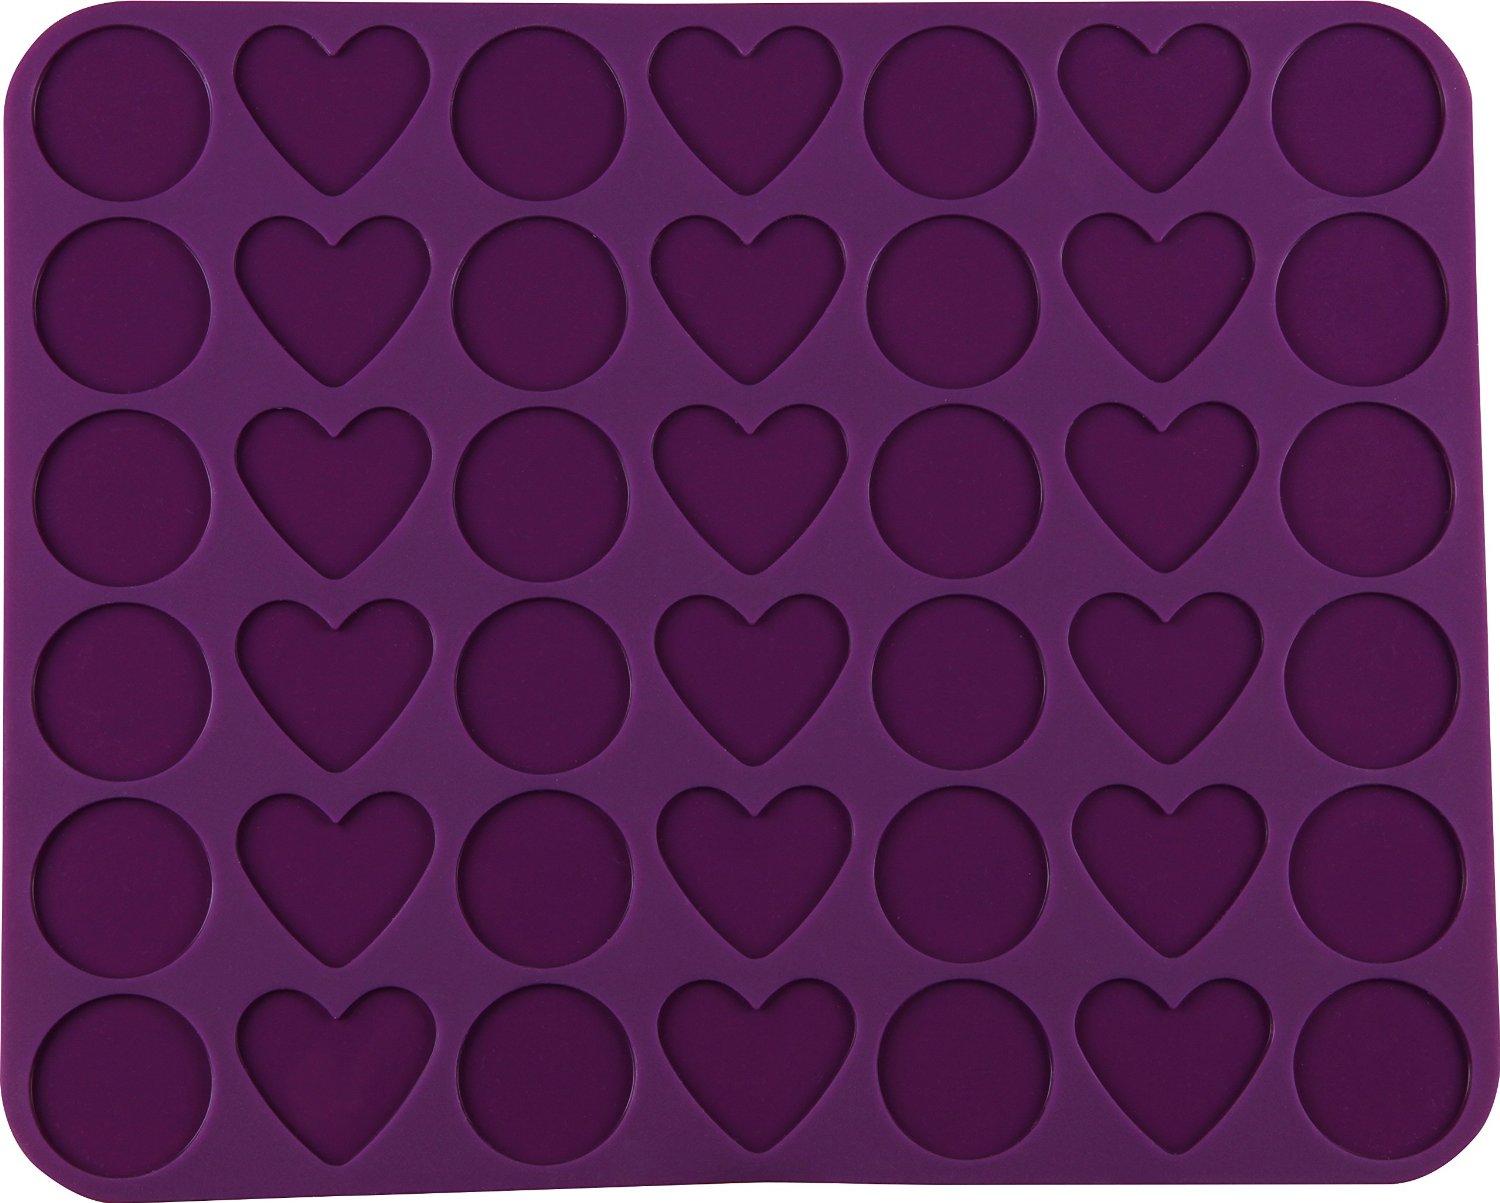 Dr. Oetker Силиконовый коврик для выпечки фигурных макарон 36 х 29 см Flexxibel Love | https://grandposuda.com.ua